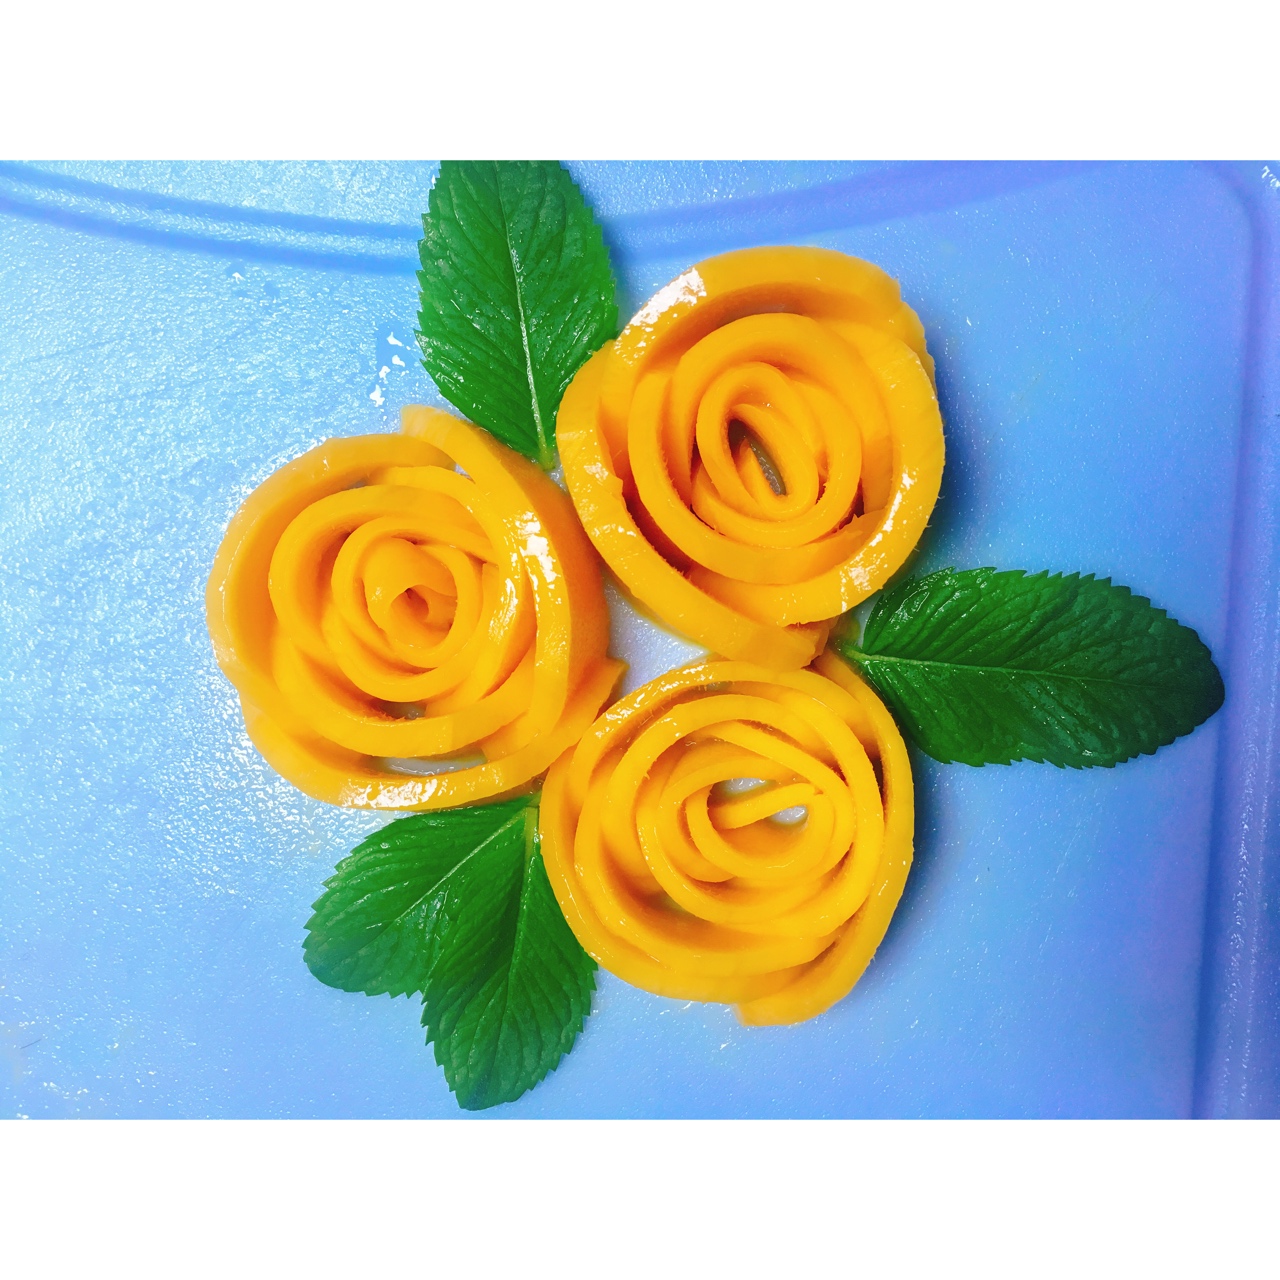 冰雪清泉做的芒果玫瑰花